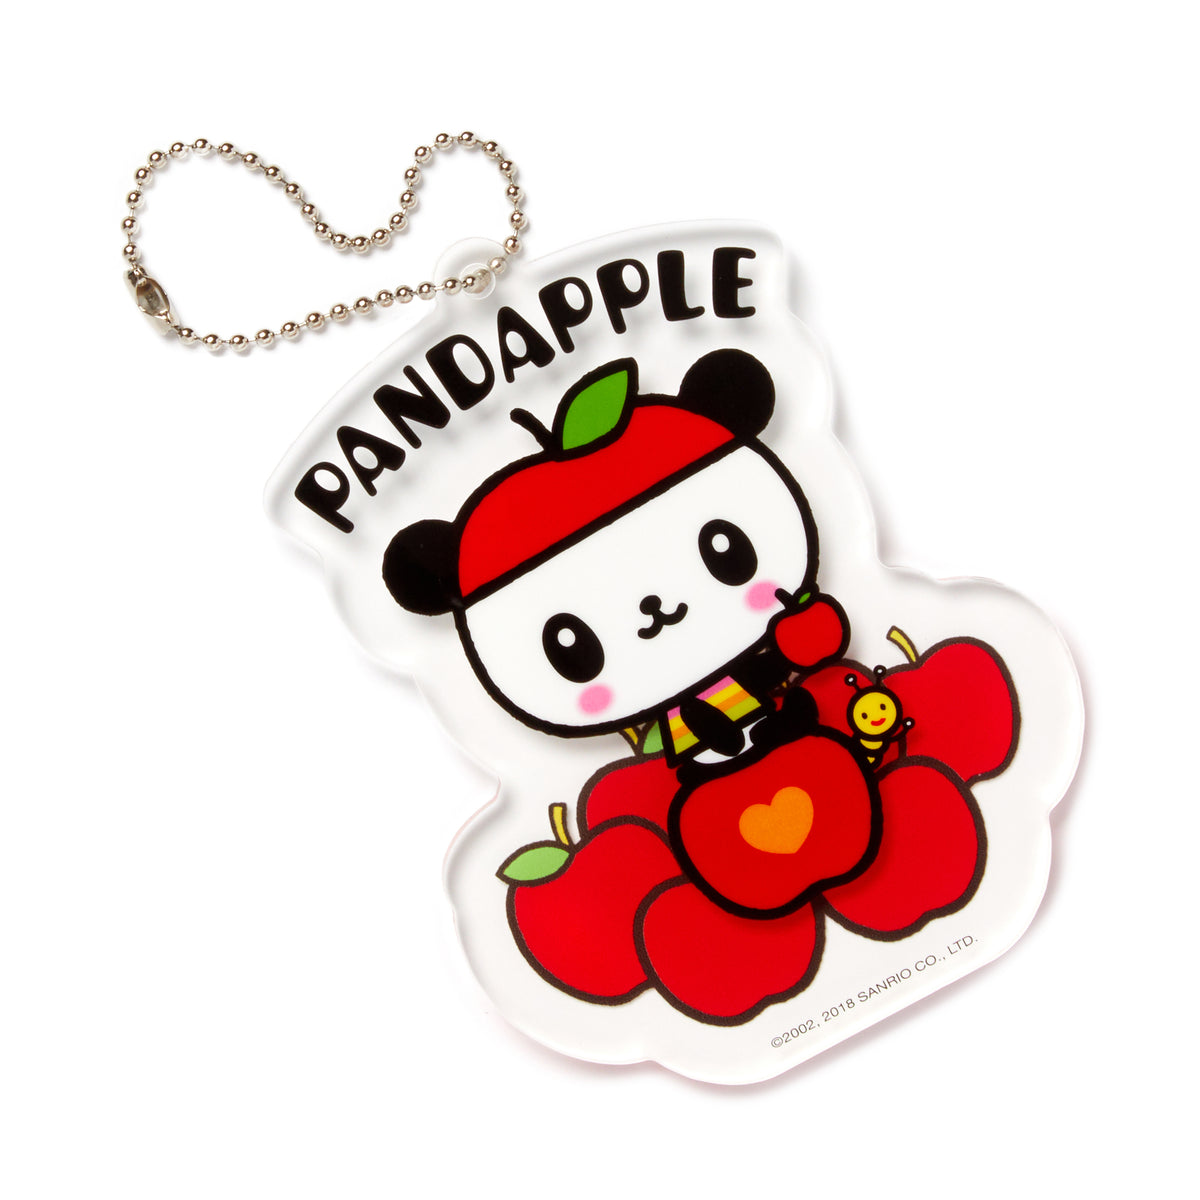 Pandapple Acrylic Keychain Trinket HUNET GLOBAL CREATIONS INC   